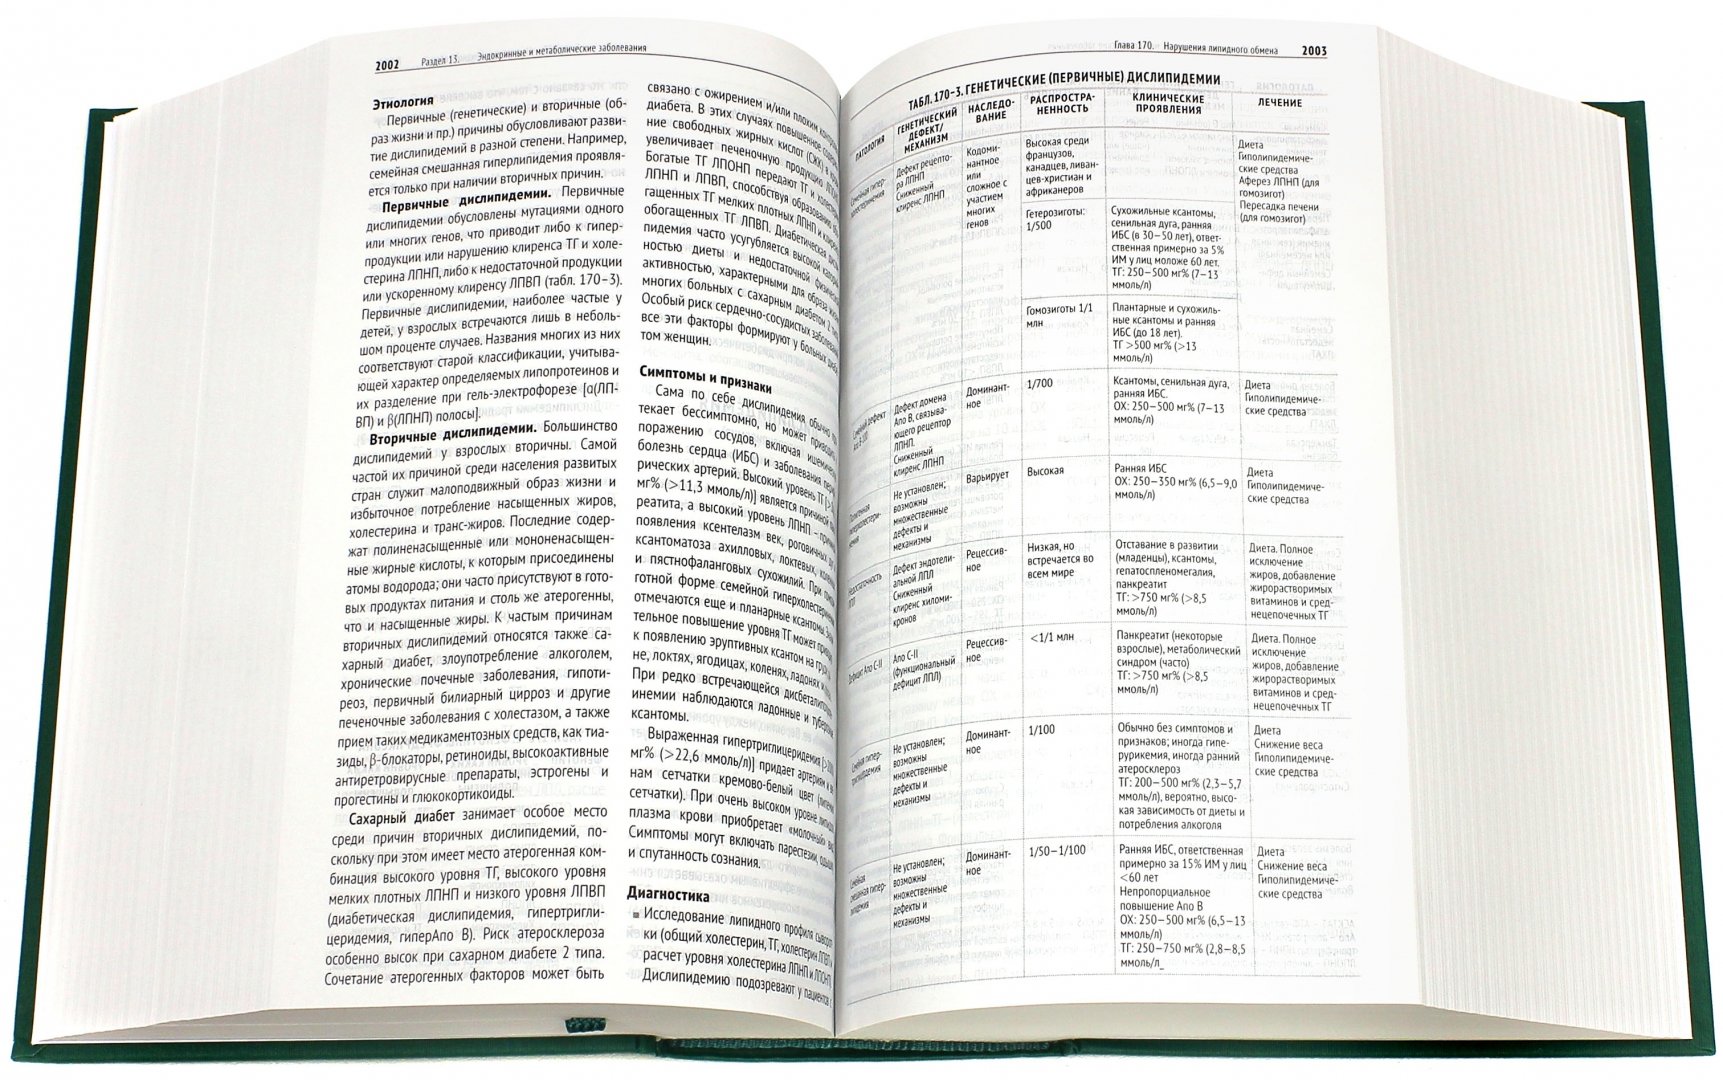 Иллюстрация 2 из 31 для The Merck Manual Руководство по медицине. Диагностика и лечение - Адамолекун, Александр, Алтман | Лабиринт - книги. Источник: Лабиринт